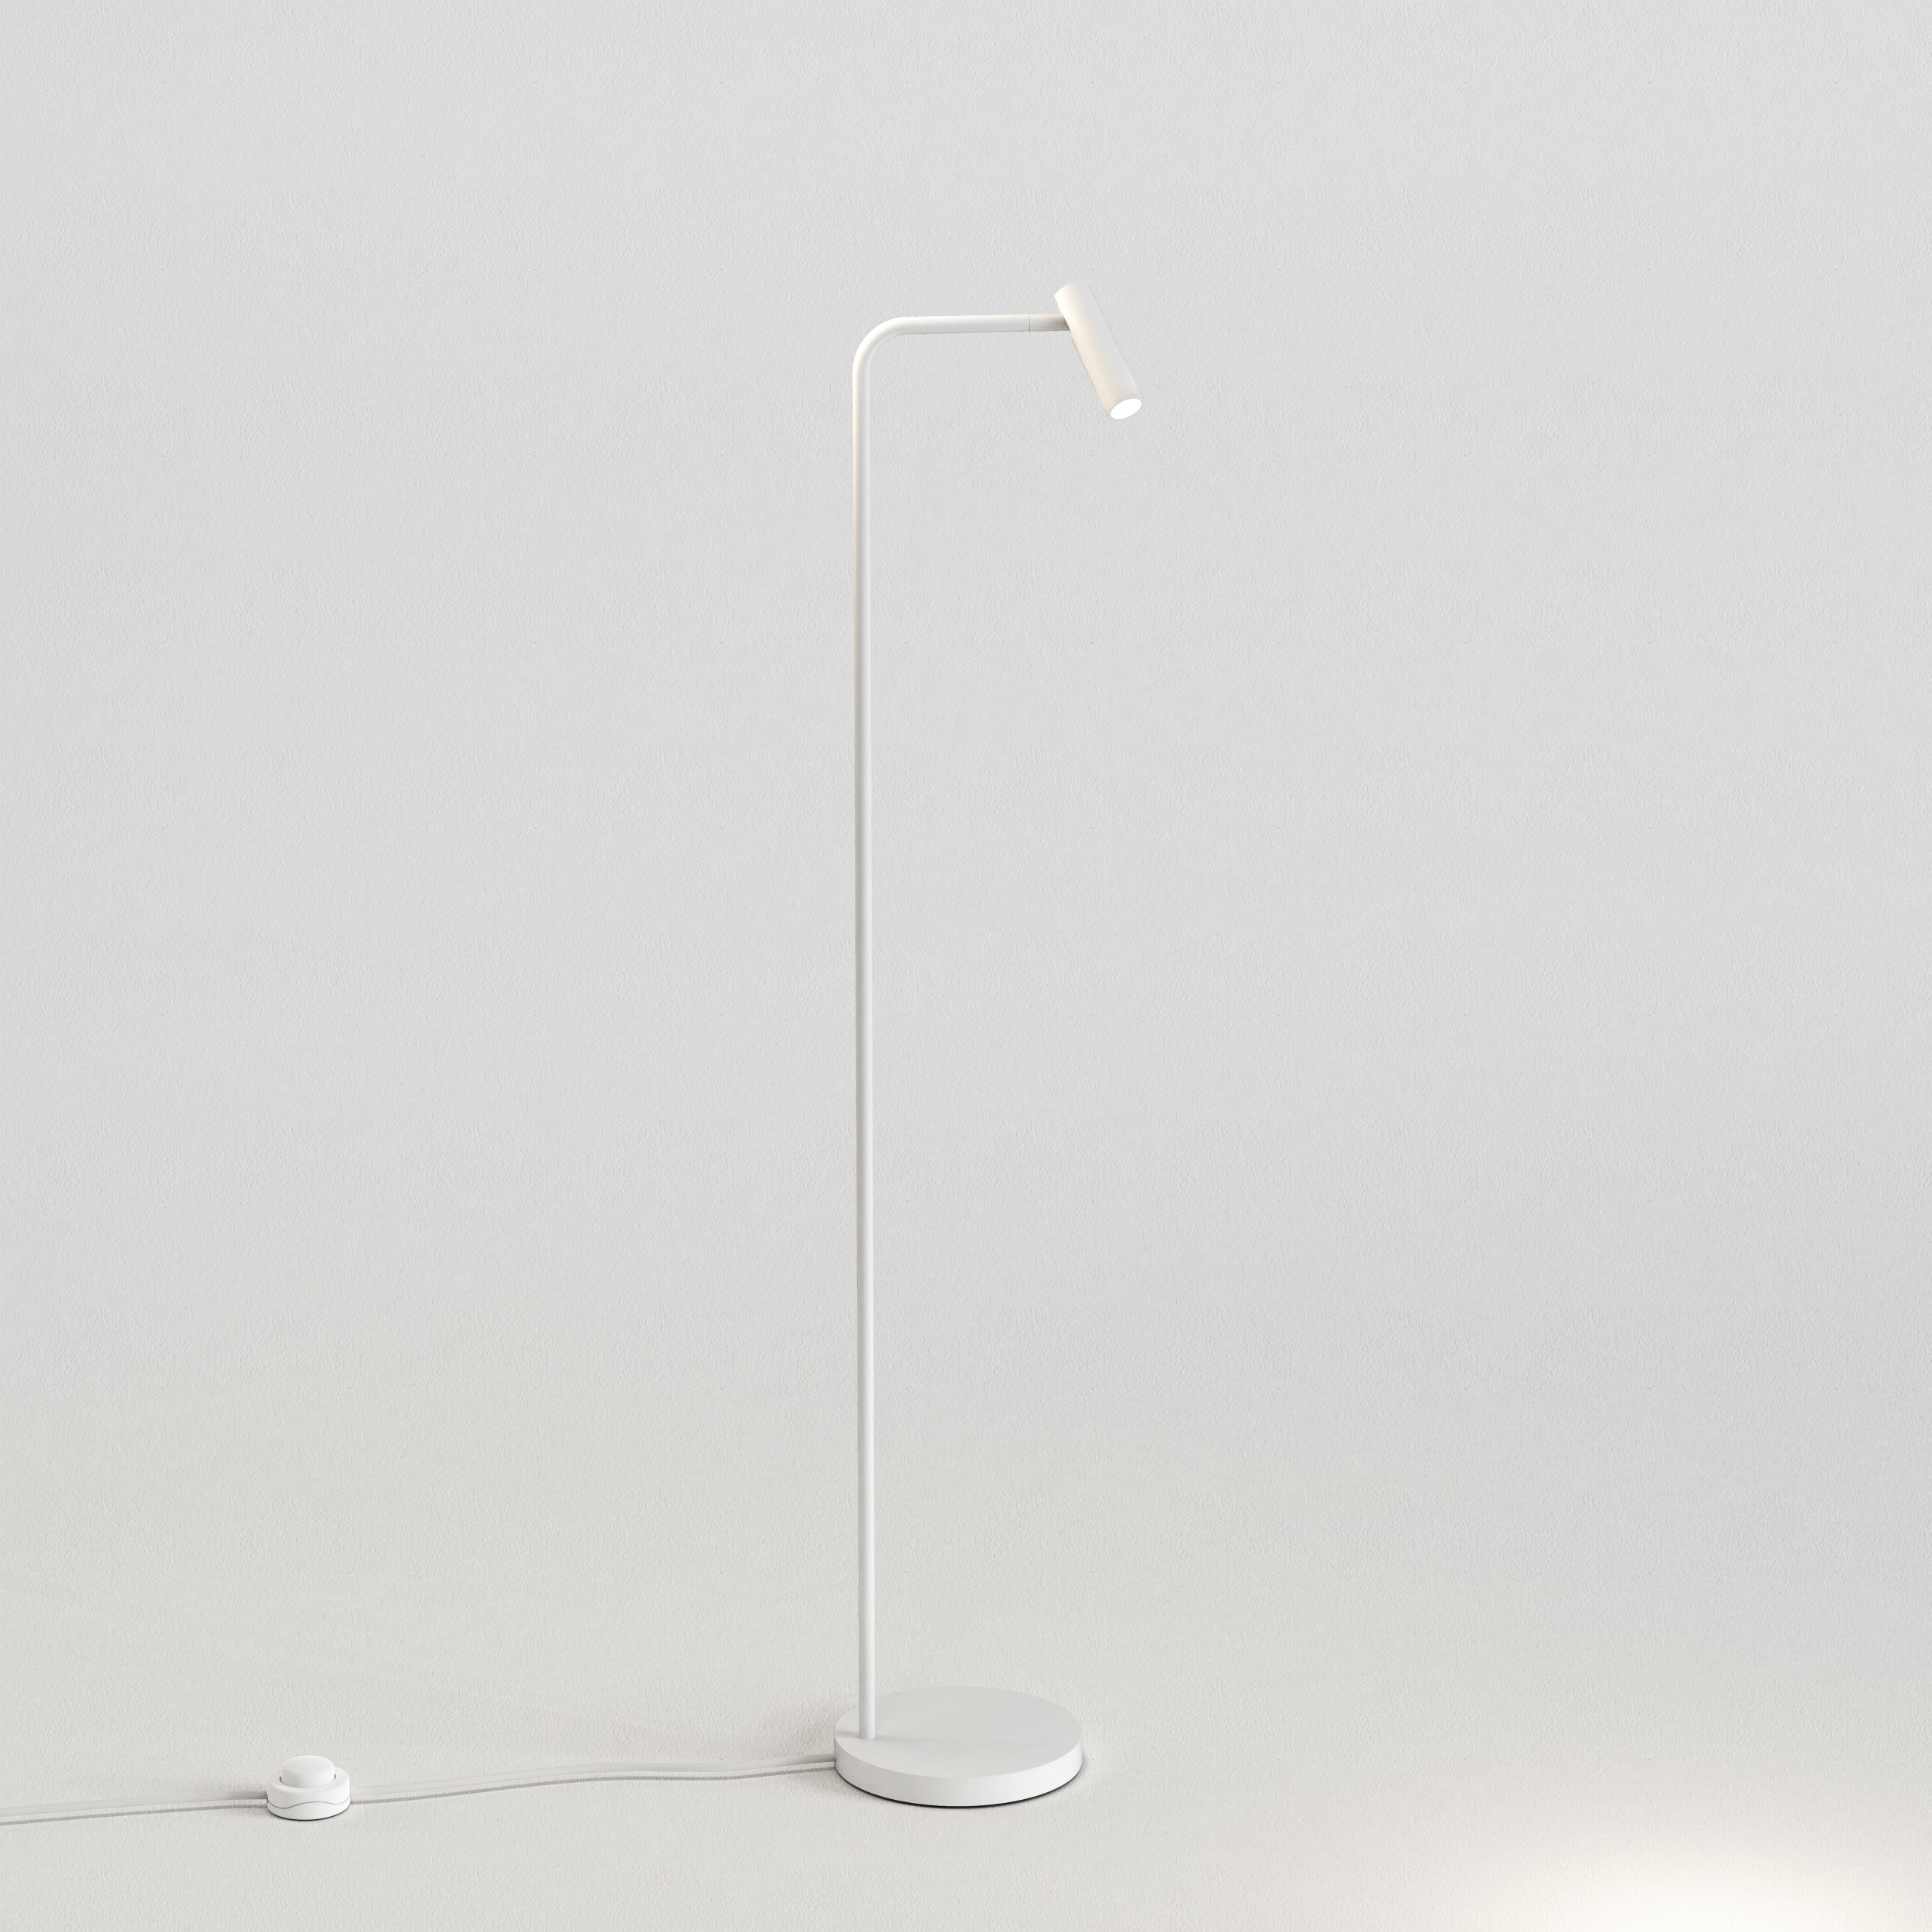 Gulvlampe i hvid aluminium med bøjet hals, rund fod og et aflangt, rundt, justerbart hoved.